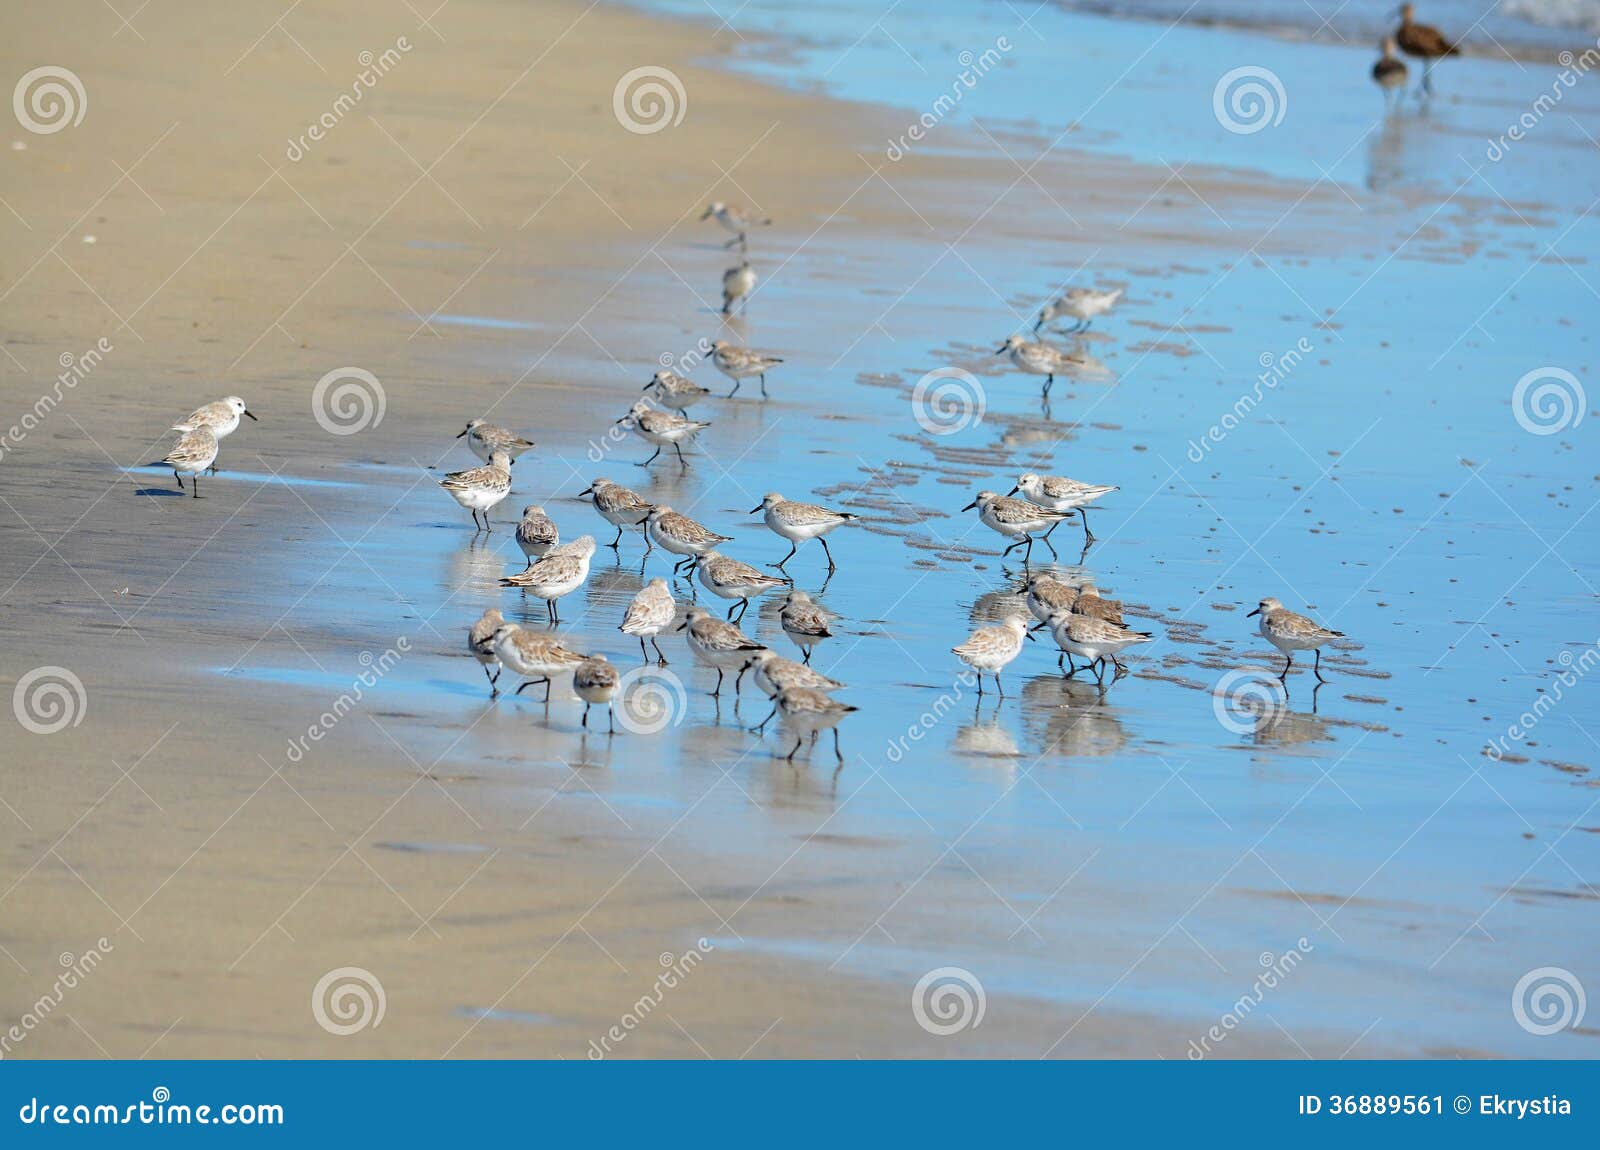 birds fishing at playa el espino